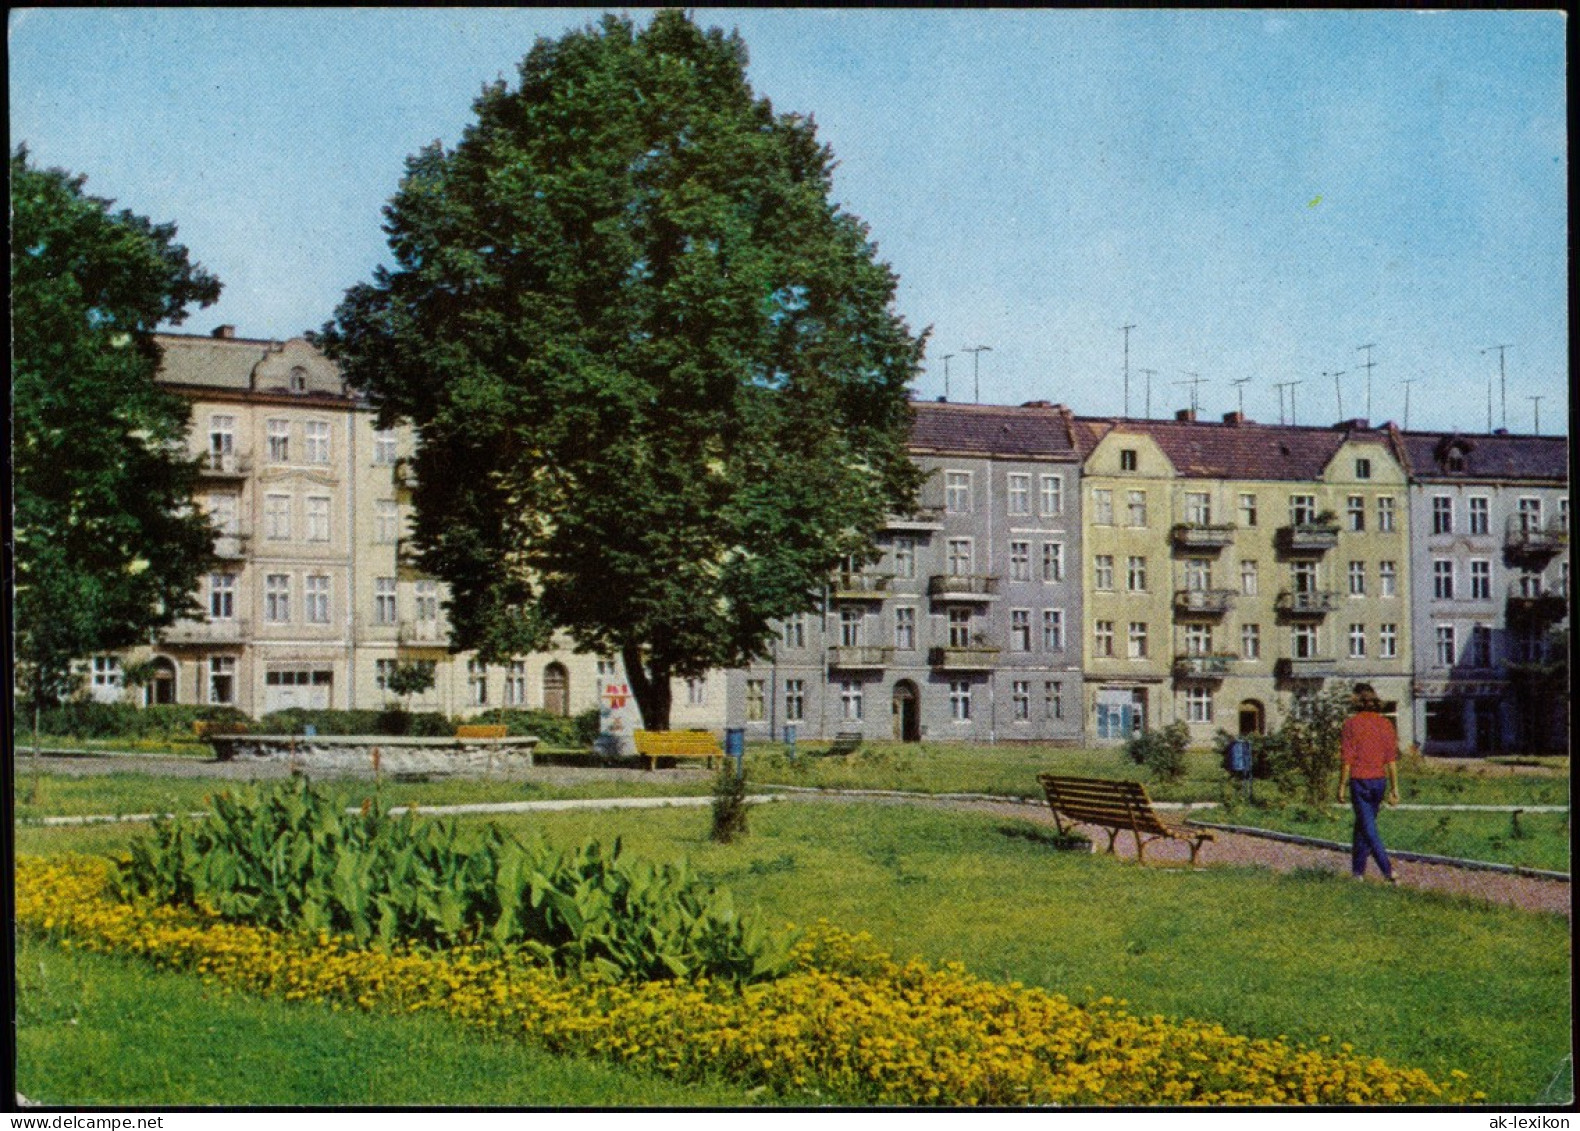 Postcard Slubice Słubice Fragment Ulicy Jedności Robotniczej 1970 - Neumark